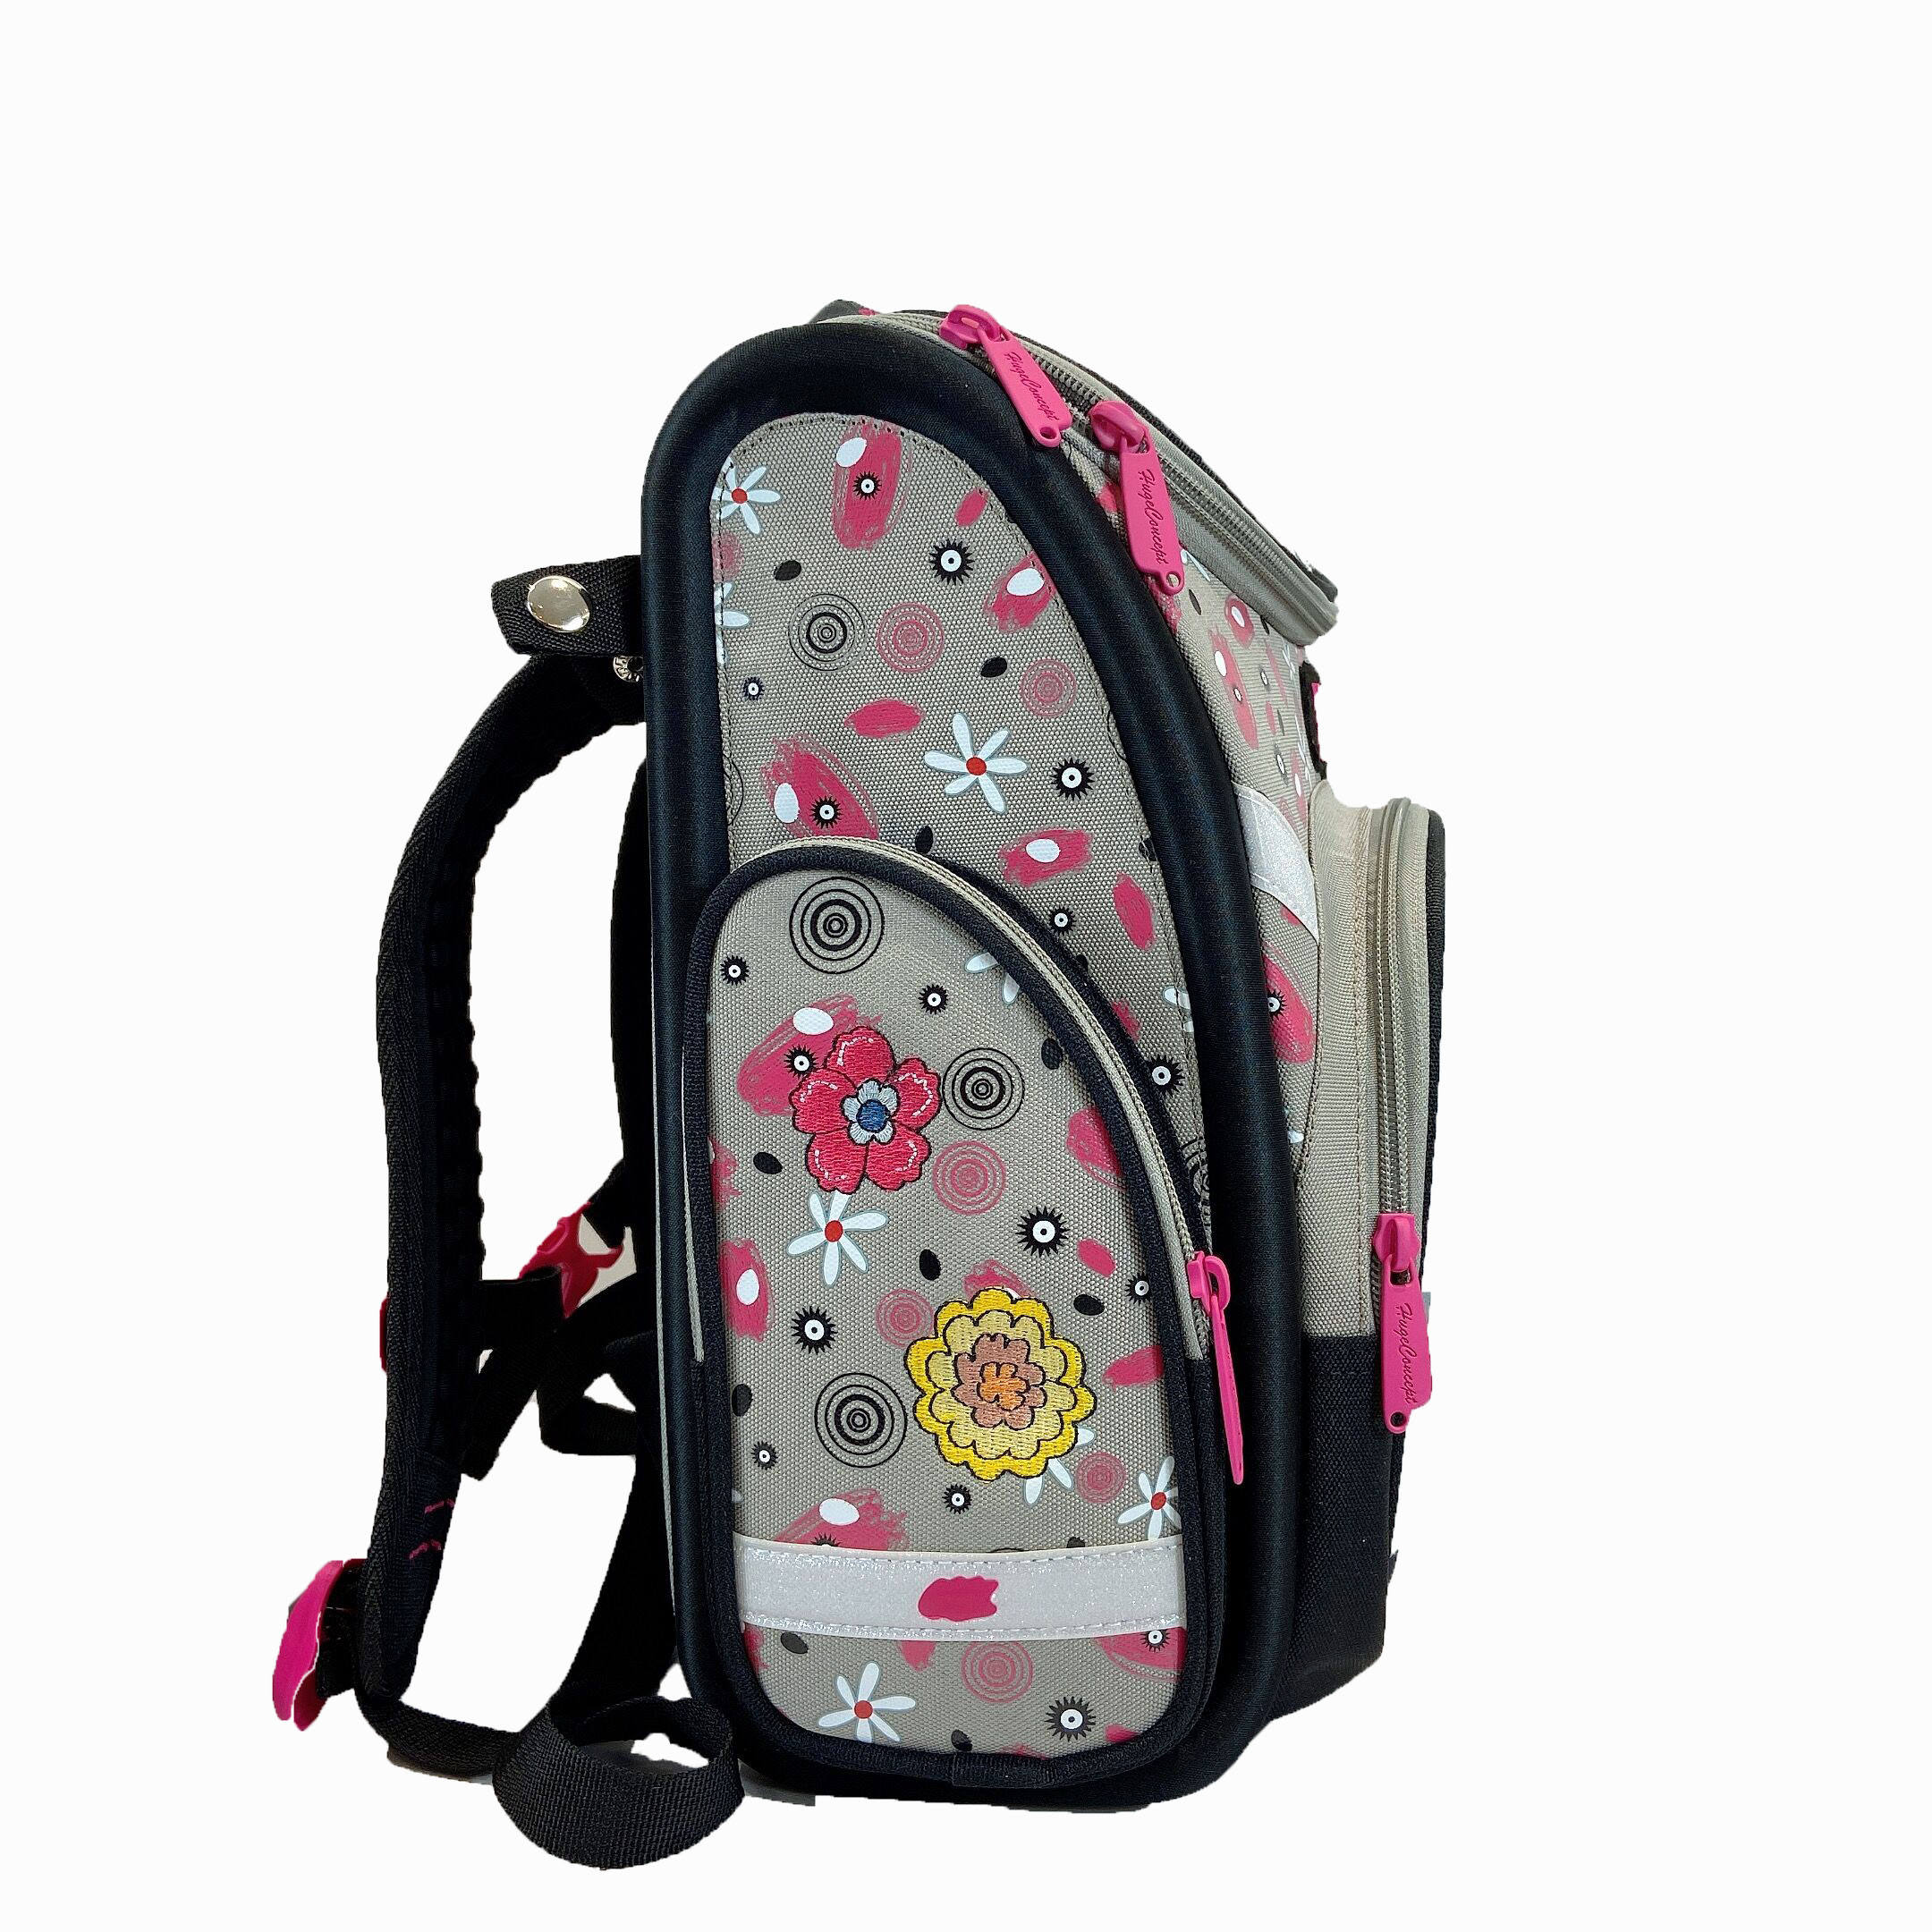 3D Digital Printing Backpack Cartoon Leisure Bag School Bags Customized Kids Backpacks Wheeled Backpack Backpack Girl Boys